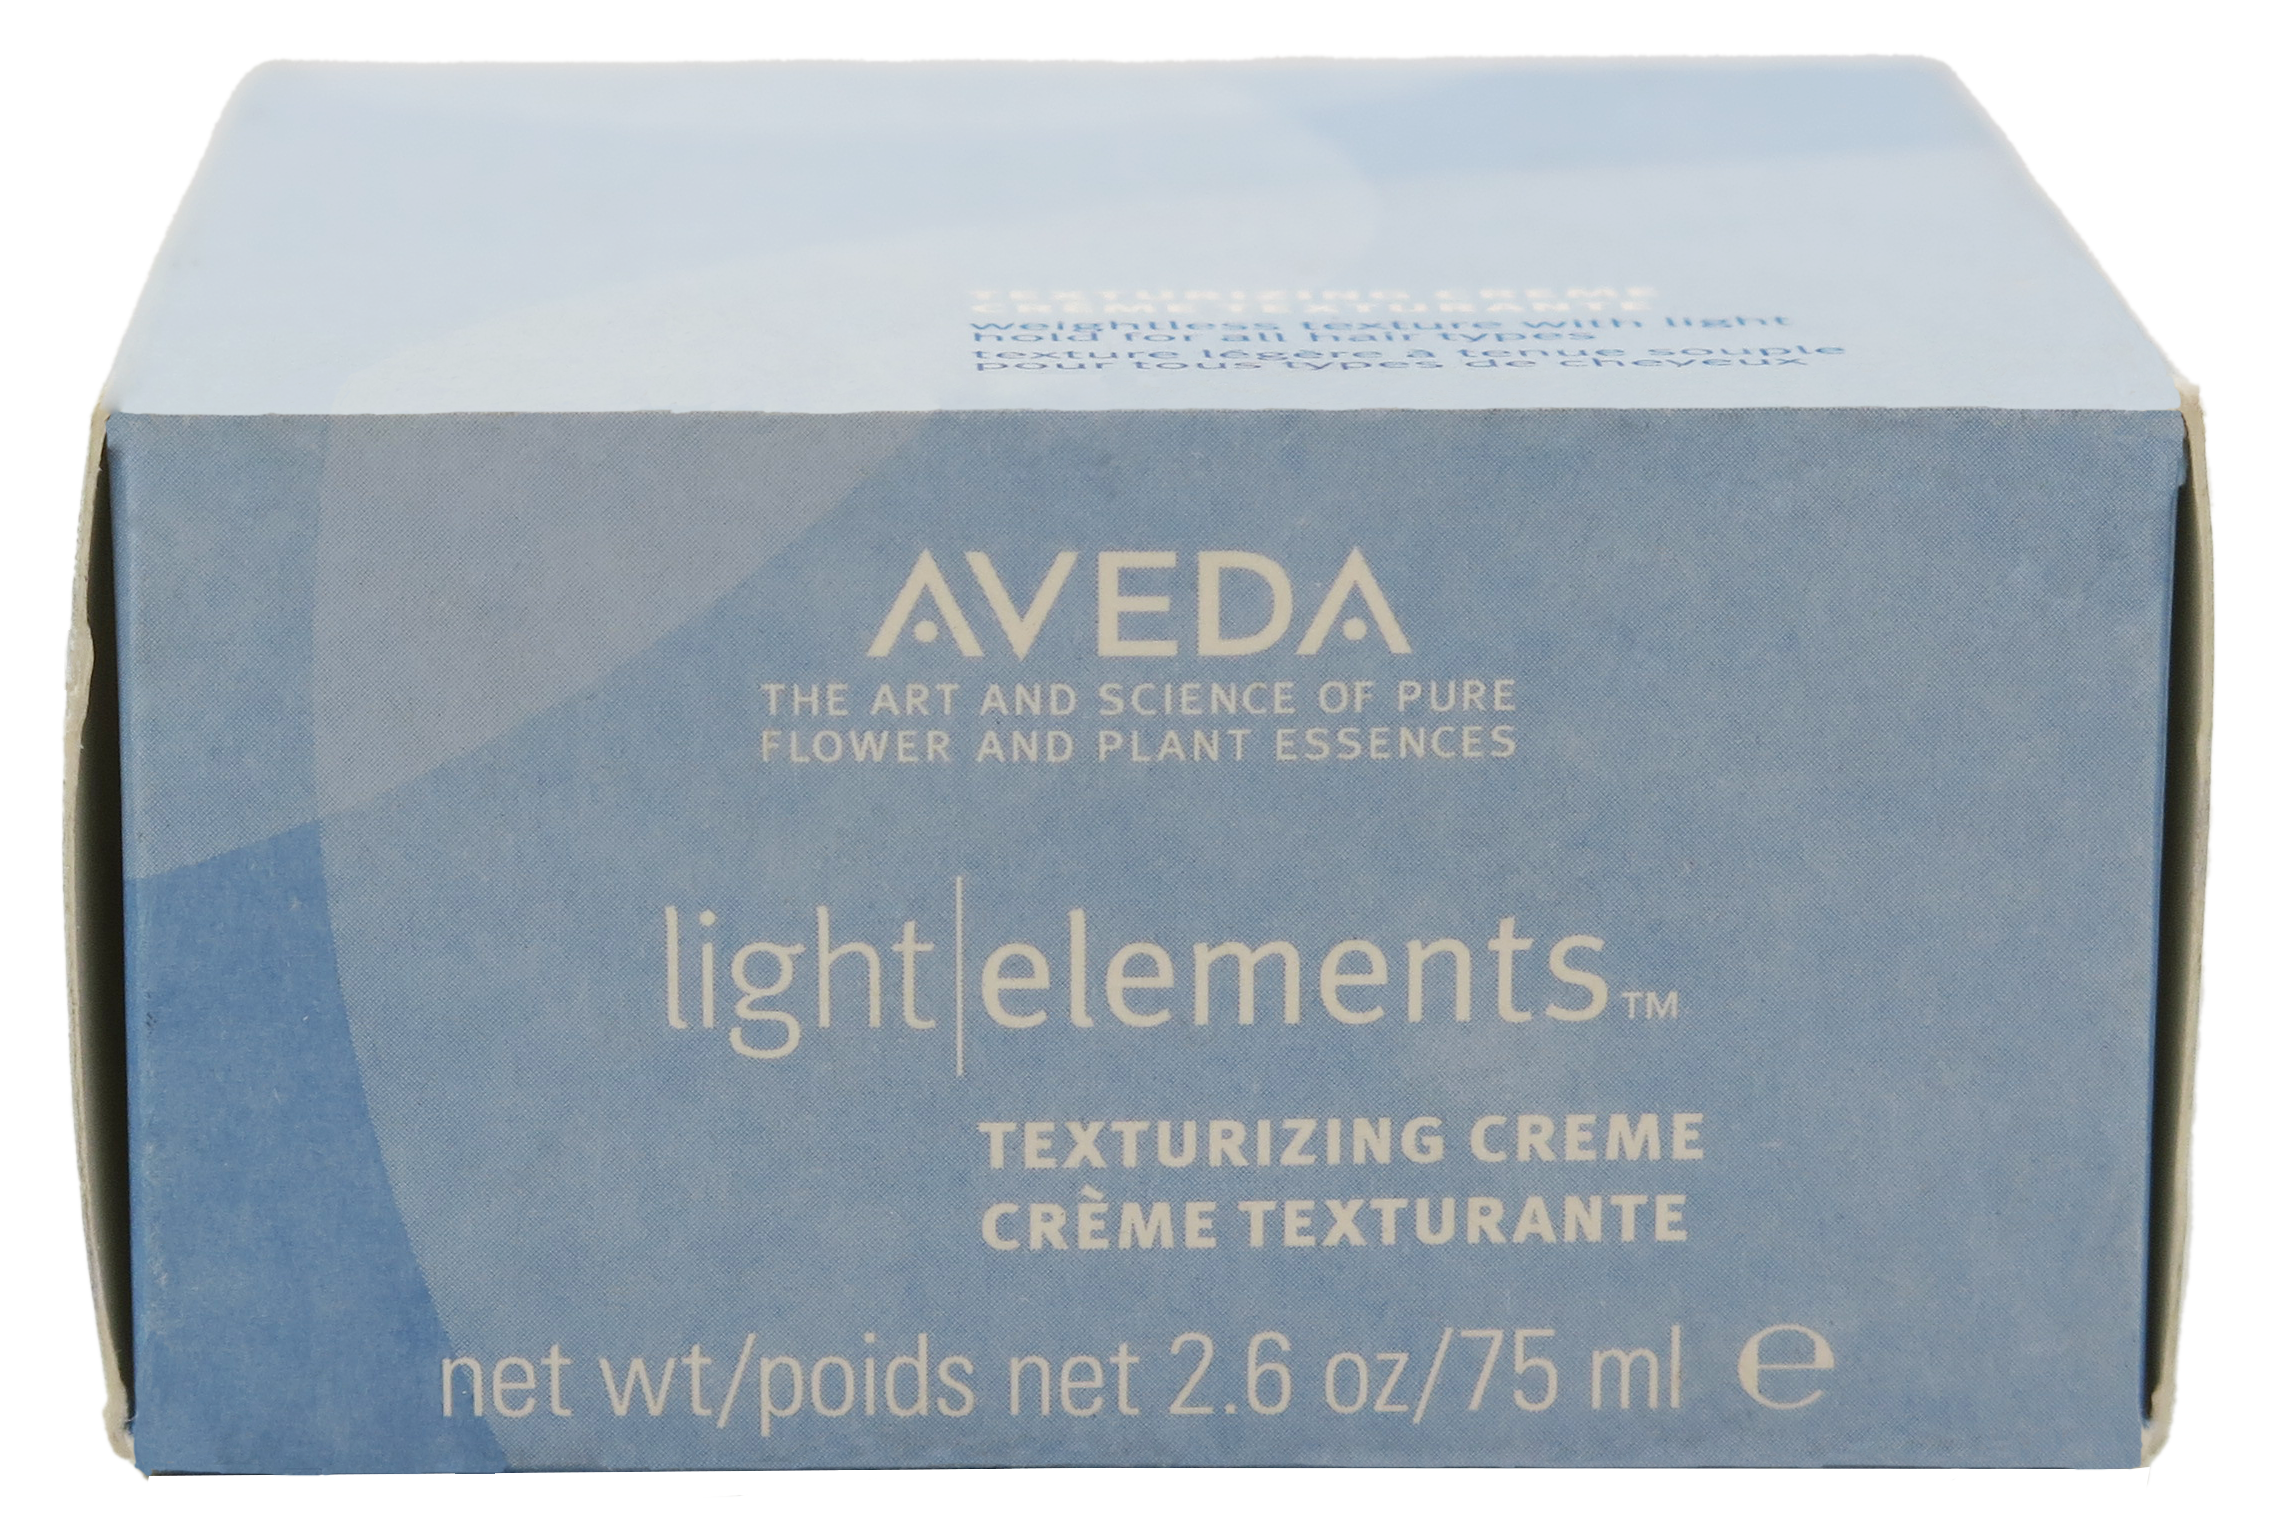 Aveda Light Elements Texturizing Creme 2.6 oz